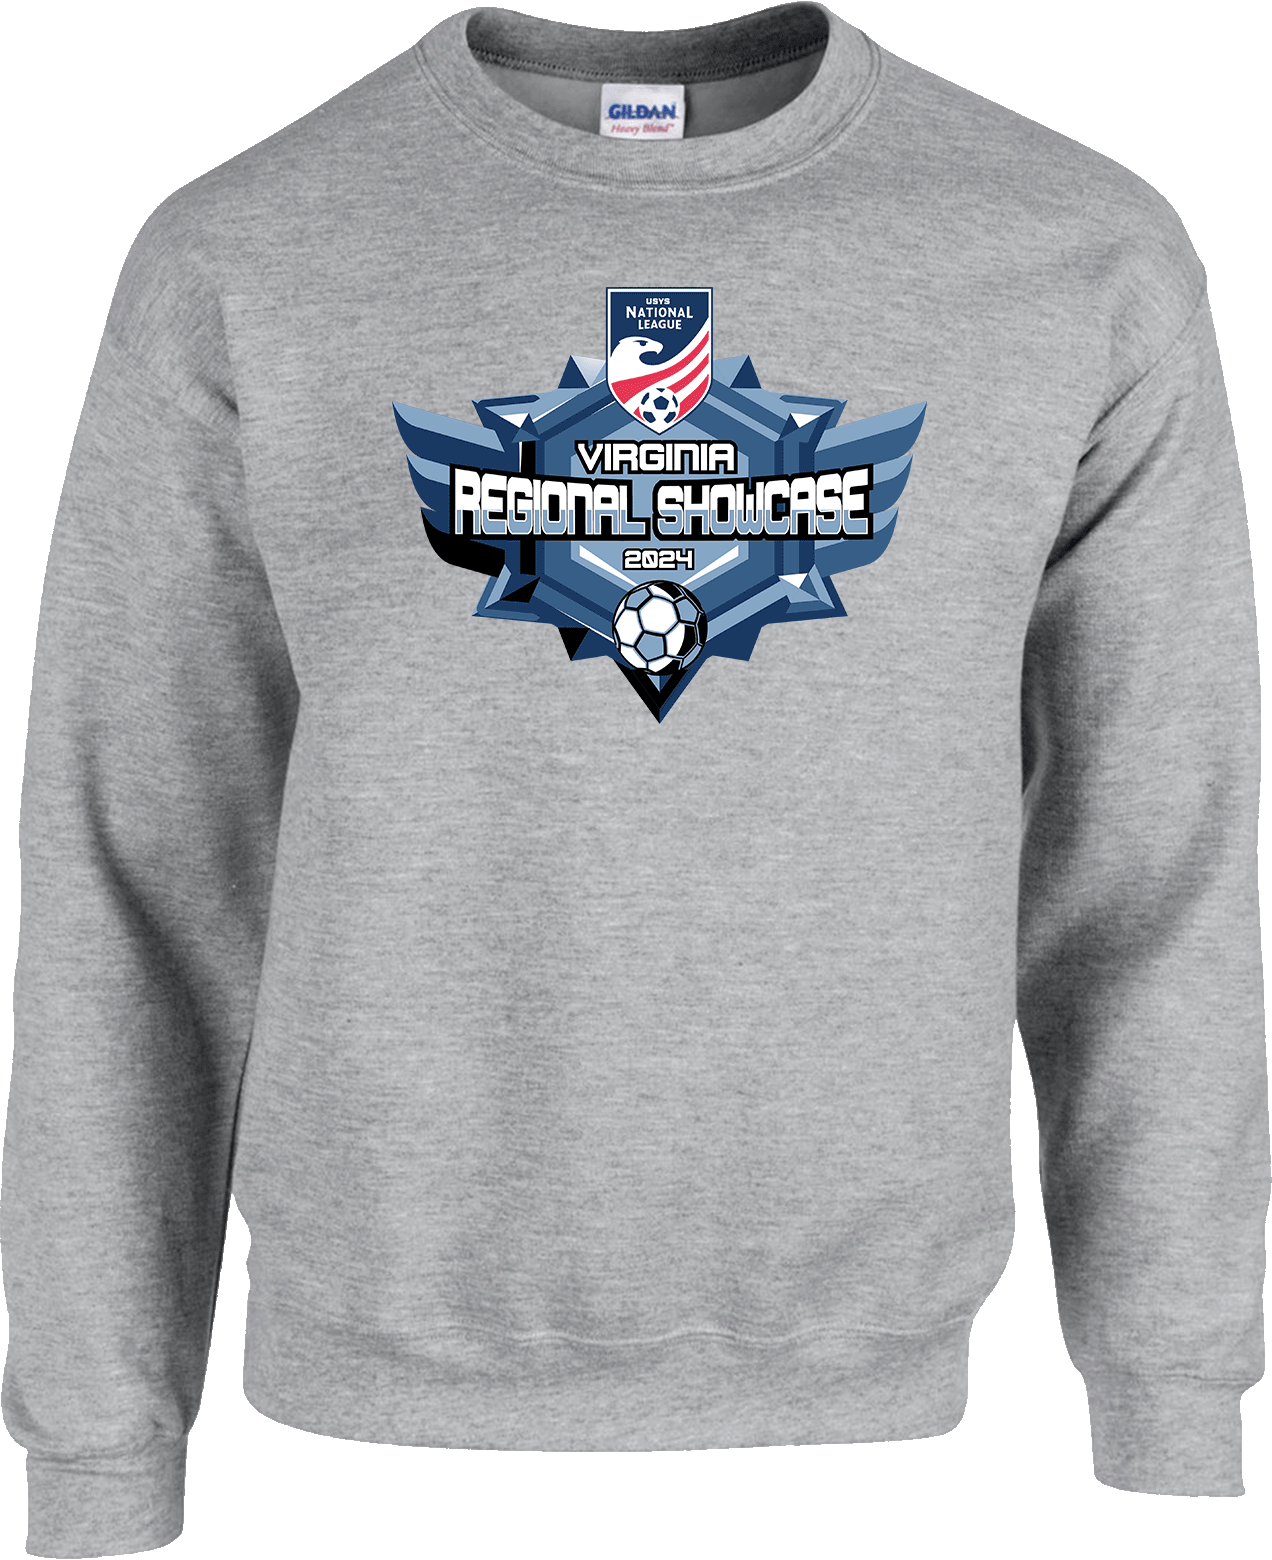 Crew Sweatershirt - 2024 USYS NL Regional Showcase Virginia